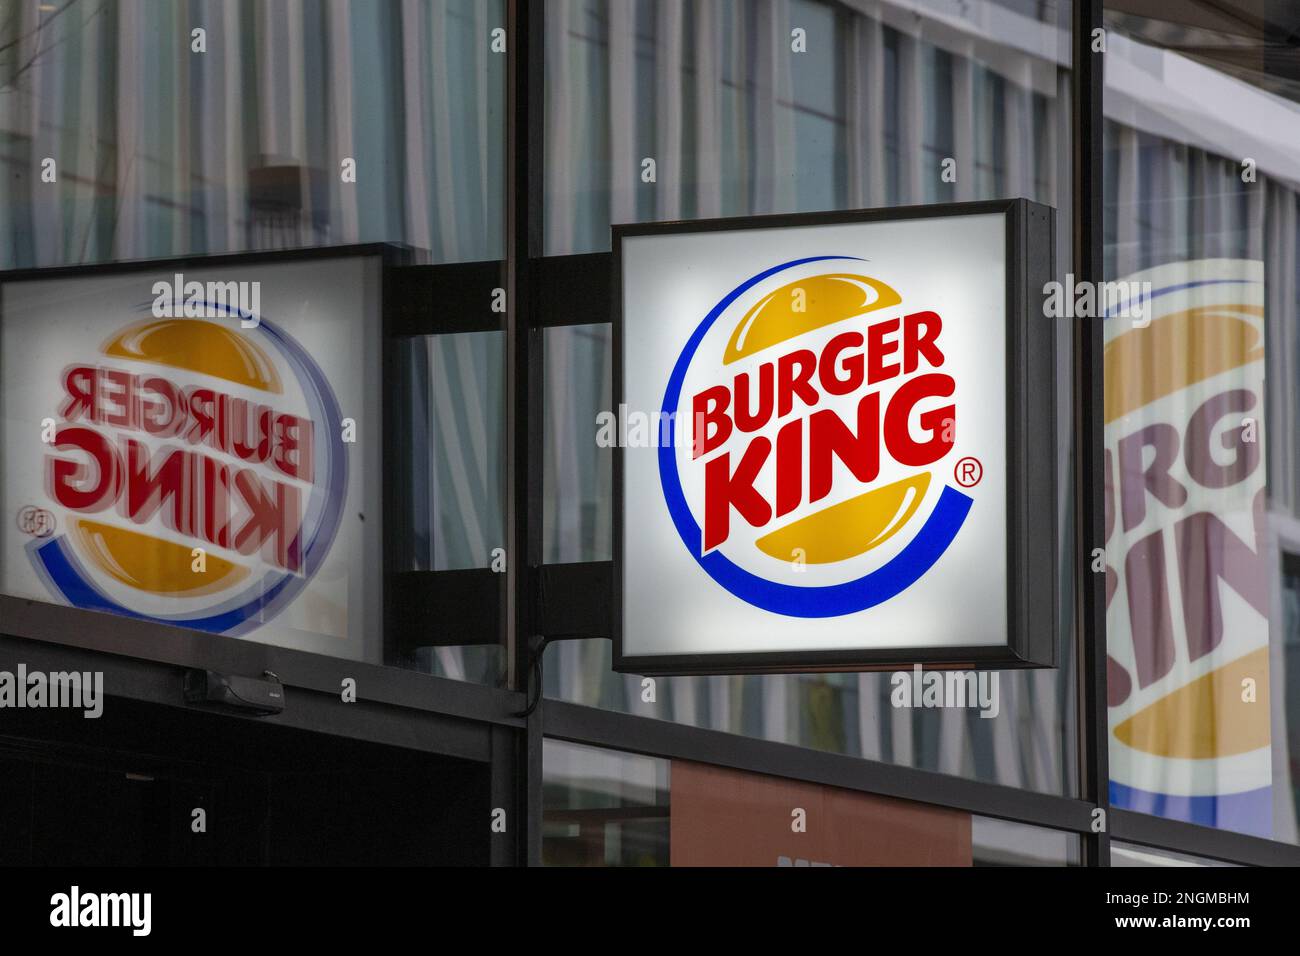 L'illustration montre le logo du restaurant de restauration rapide Burger King dans le quartier de Brouckere place - Brouckereplein dans le centre-ville de Bruxelles, samedi 18 février 2023. BELGA PHOTO NICOLAS MATERLINCK Banque D'Images